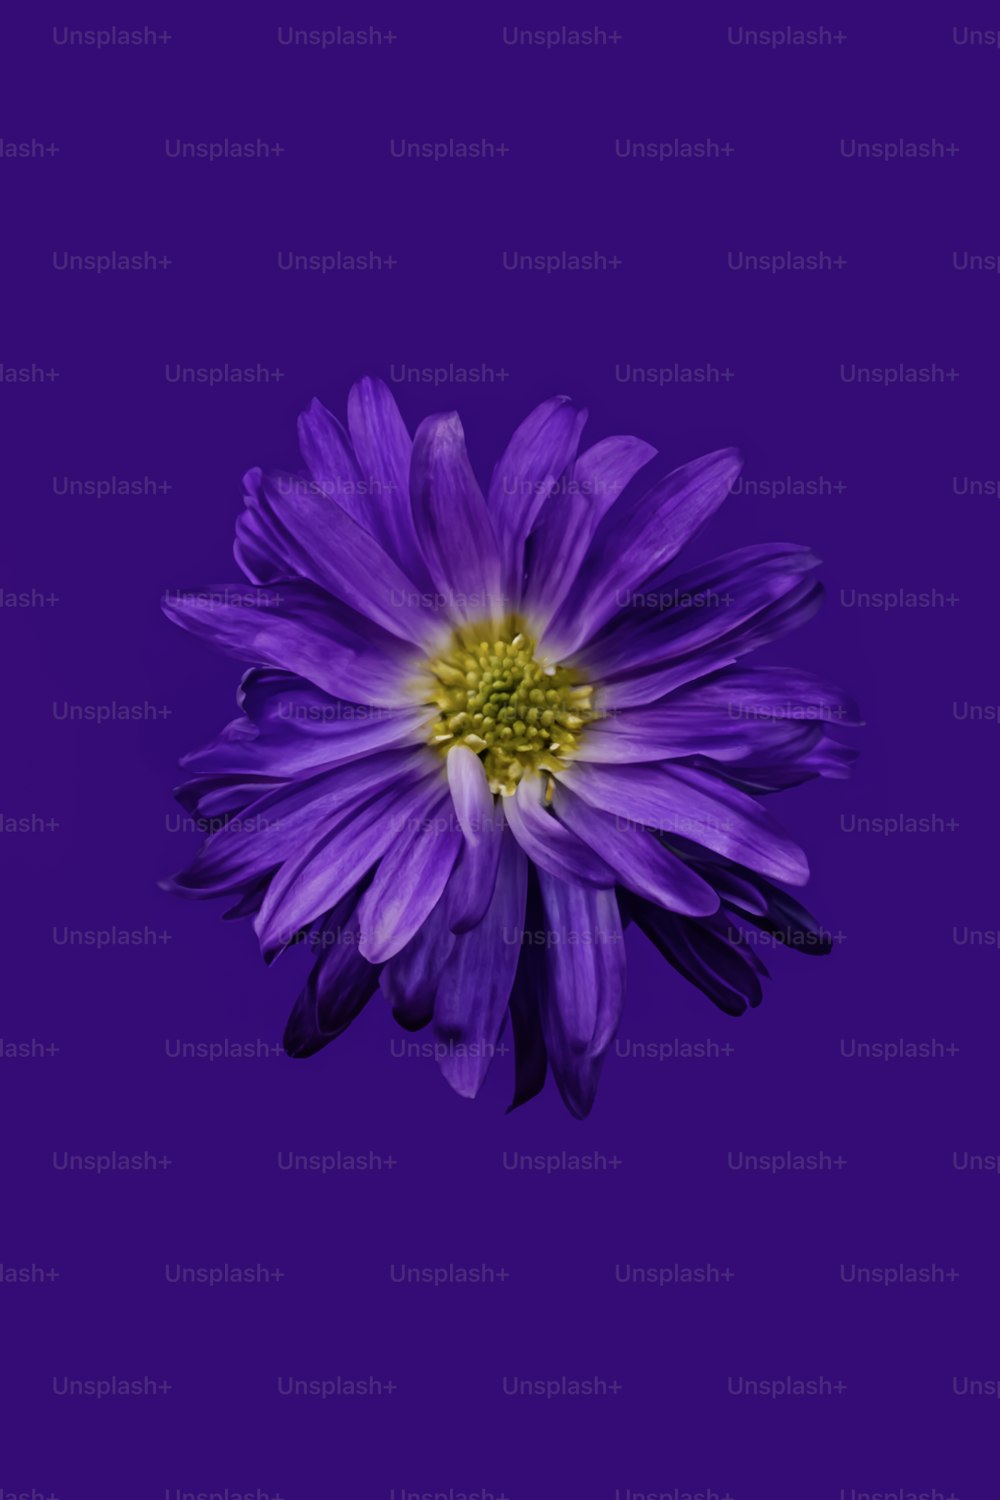 eine violette Blume mit einer gelben Mitte auf einem violetten Hintergrund